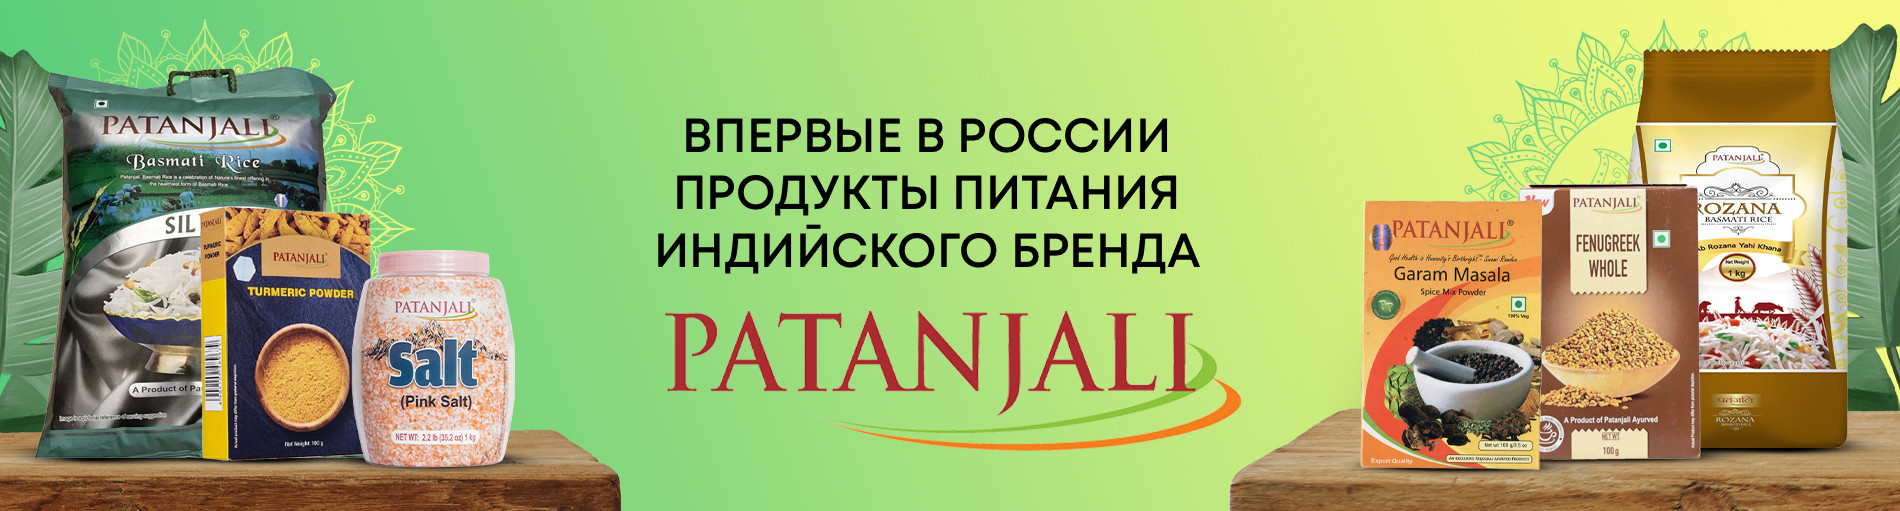 Впервые в России продукты питания индийского бренда Patanjali 